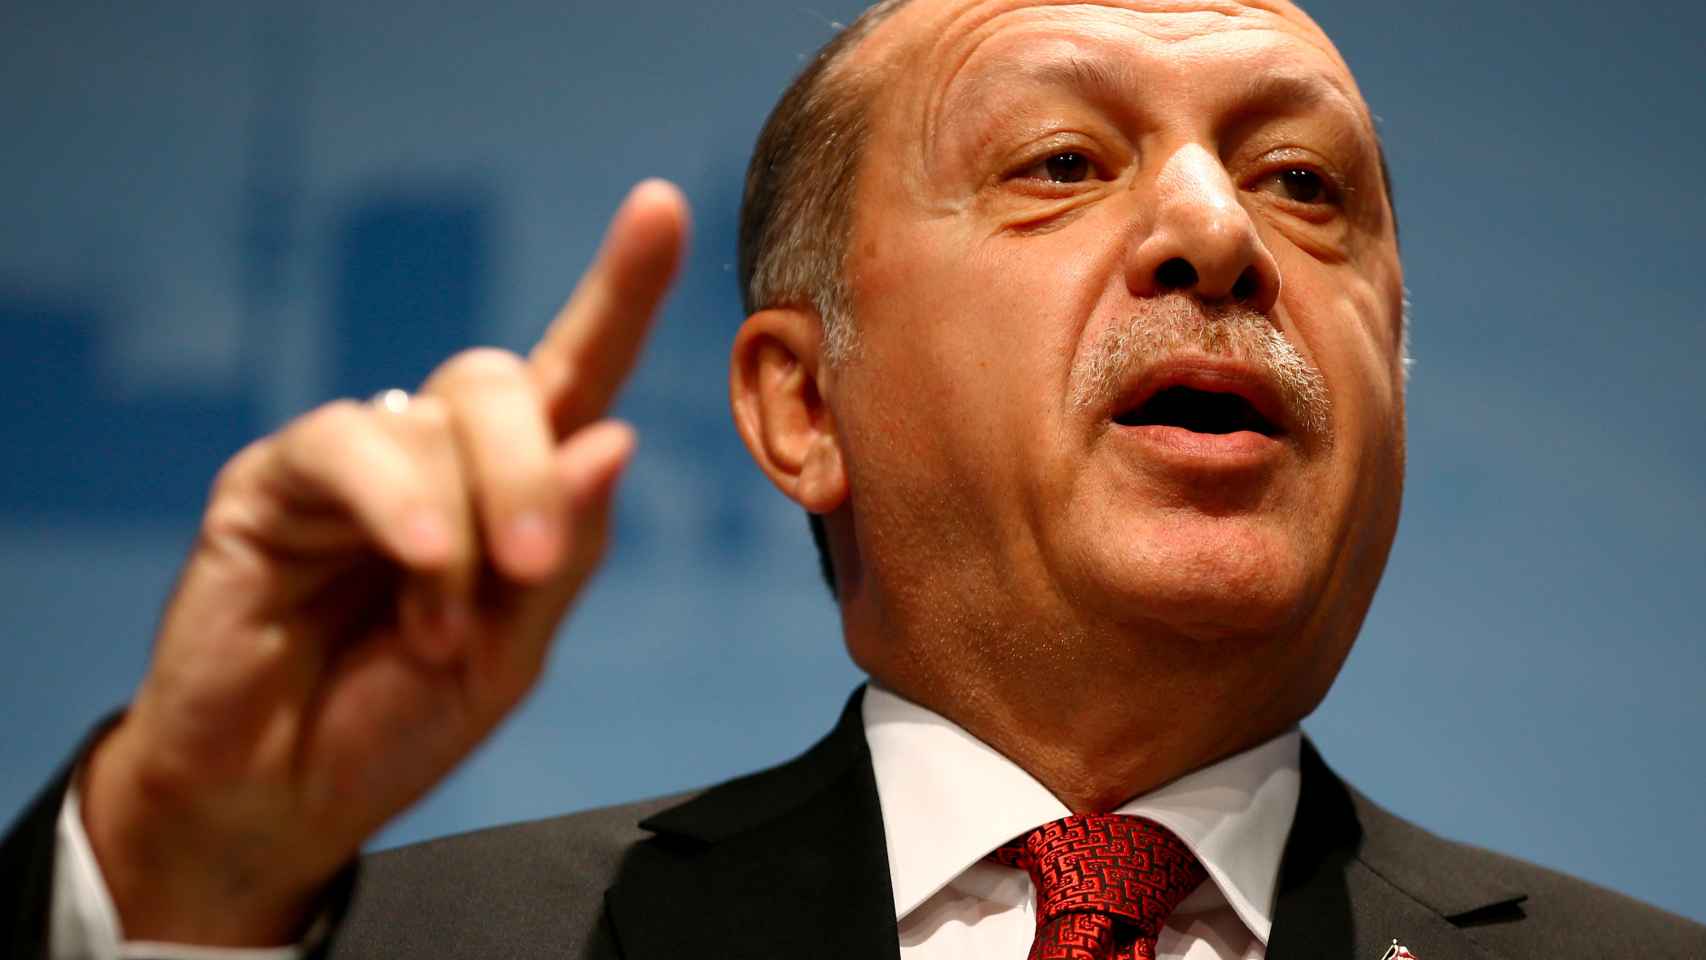 La deriva autoritaria de Erdogan lo ha alejado de Europa.